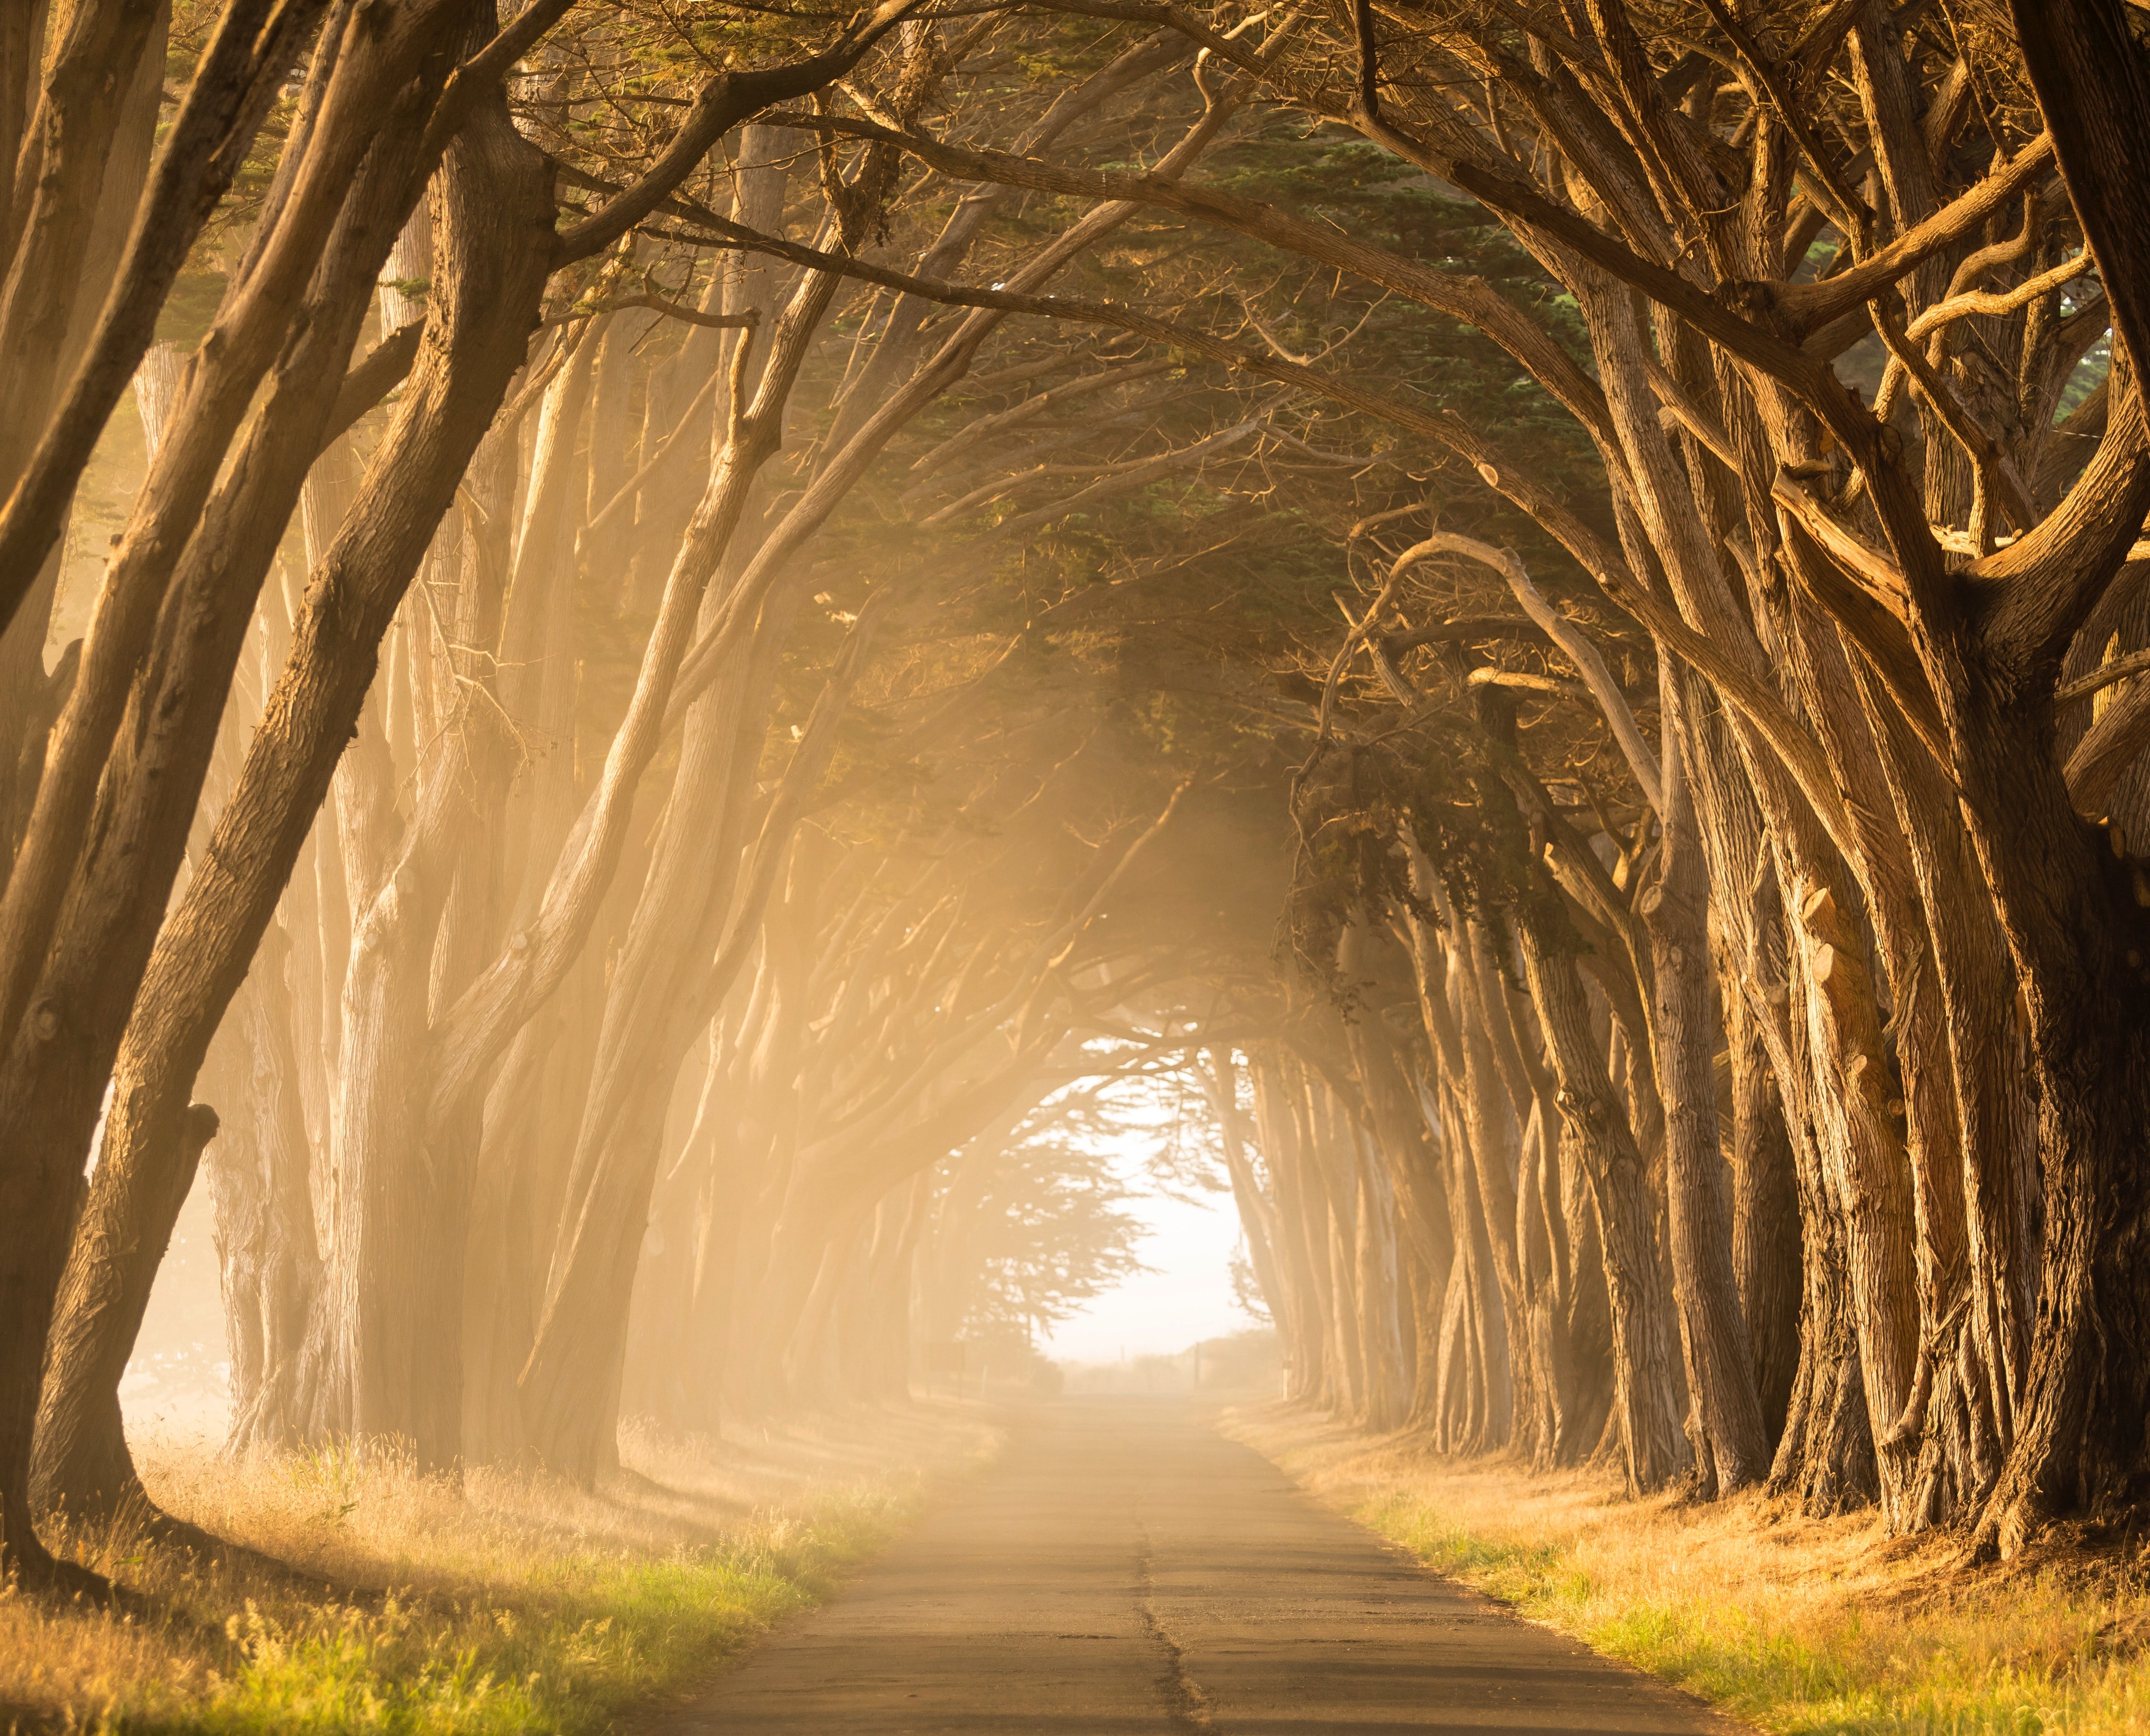 Auringon valaisema tie, jota puut ympäröivät.